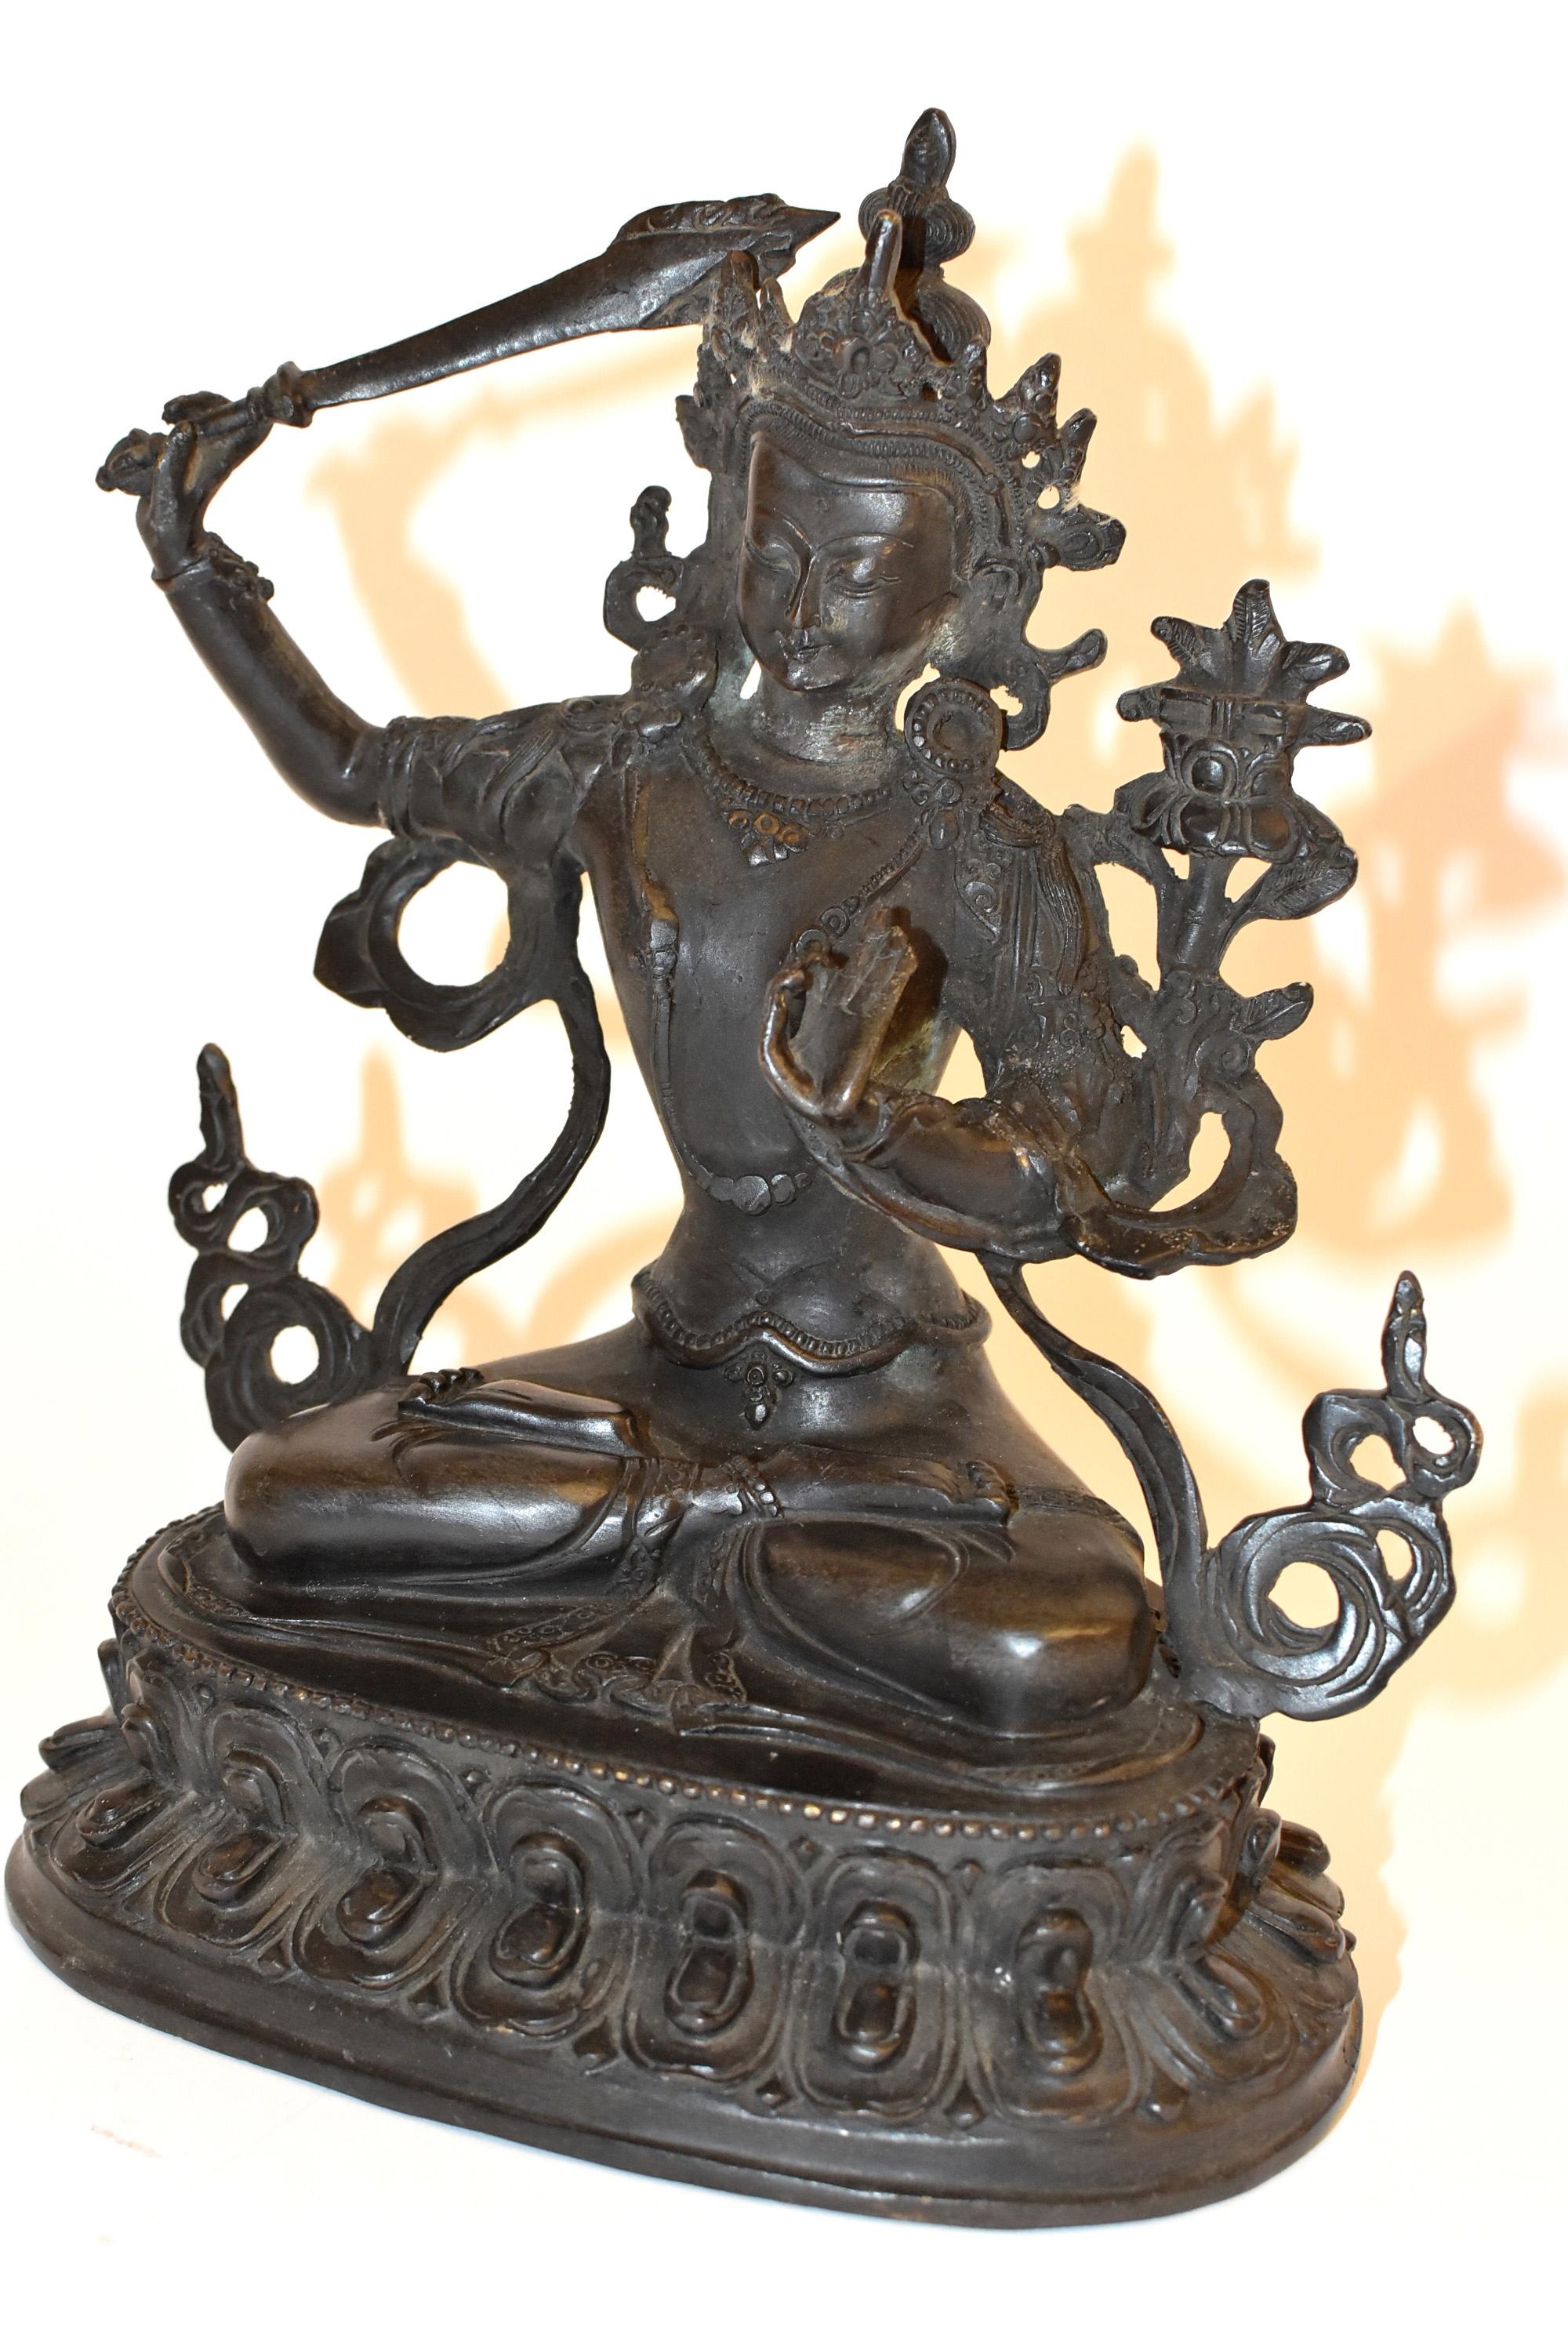 Eine wunderschöne Statue des tibetischen Bodhisattva Manjushree. Die Legende besagt, dass er mit dem Schwert Wasser schneidet, um die Wasserressourcen zu teilen und trockene Täler zu bewässern. Im tibetischen Buddhismus manifestiert sich Mañjusri